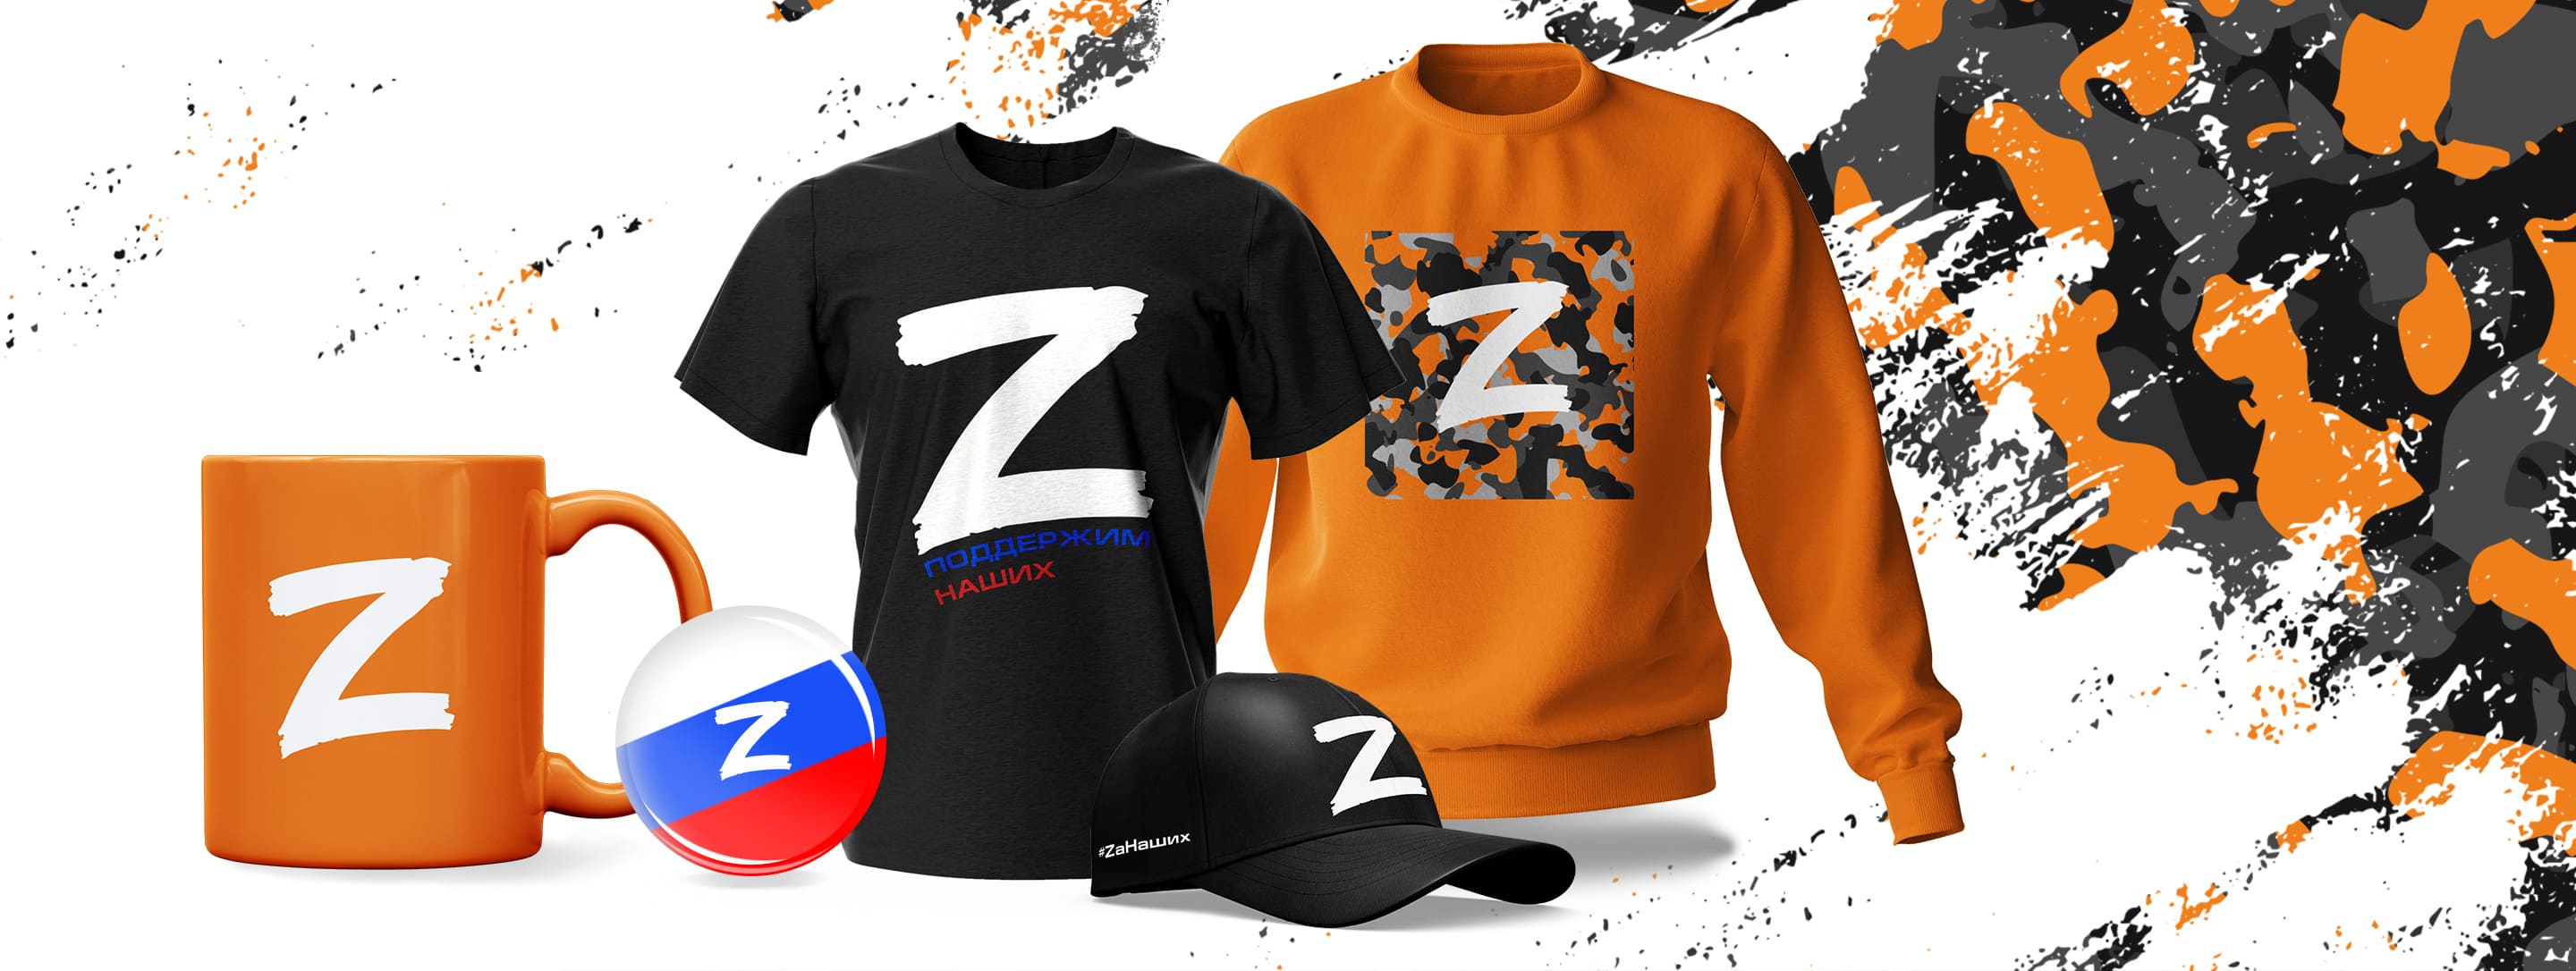 Одежда с символикой Z